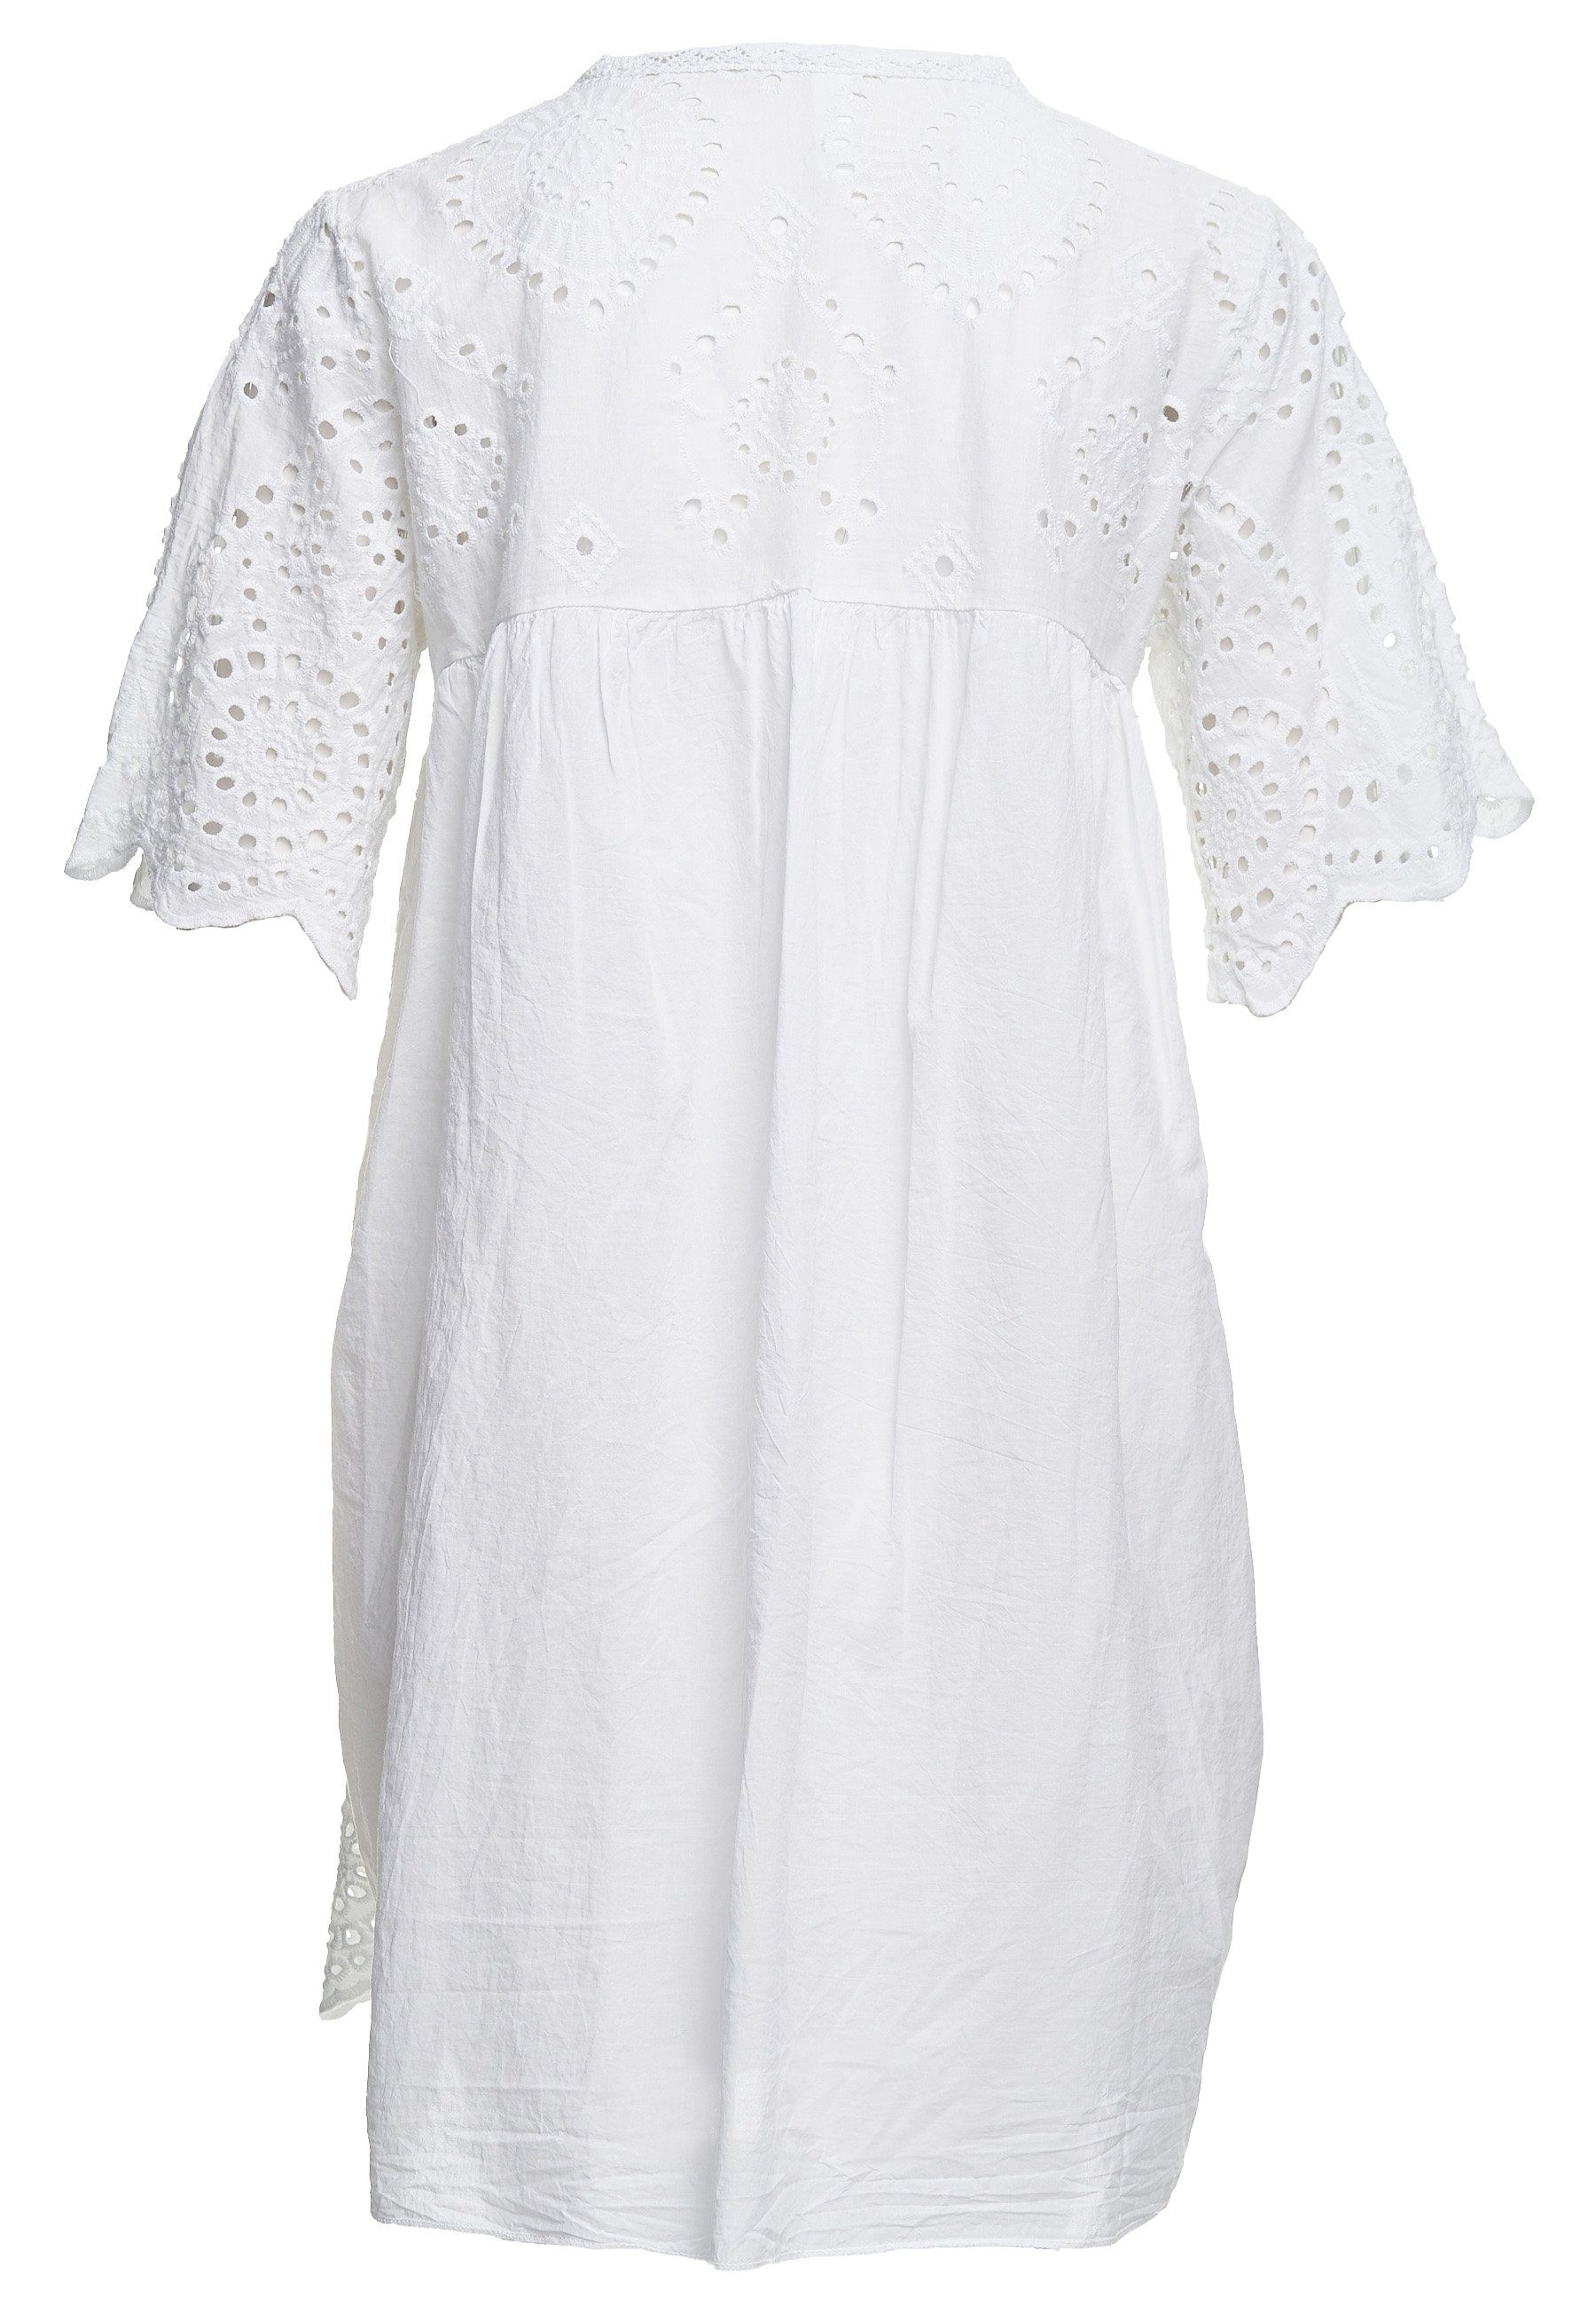 Decay Klassische weiß Design in tollem Bluse